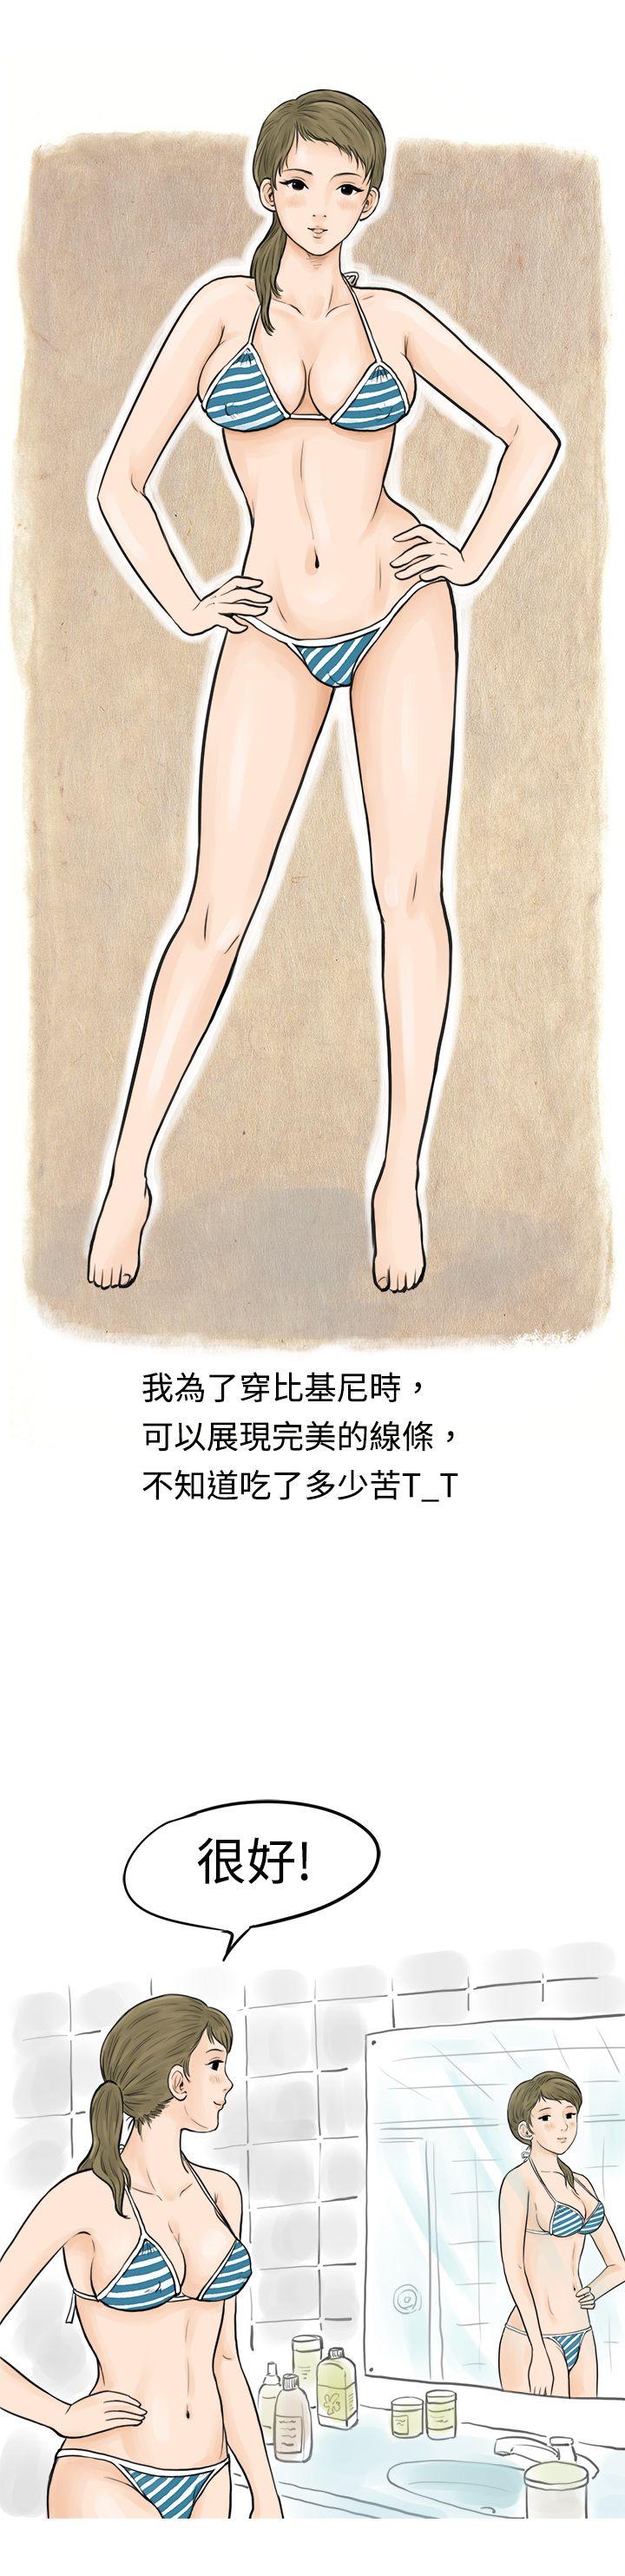 韩国污漫画 秘密Story 在梨泰院游泳池中的小故事(上) 4